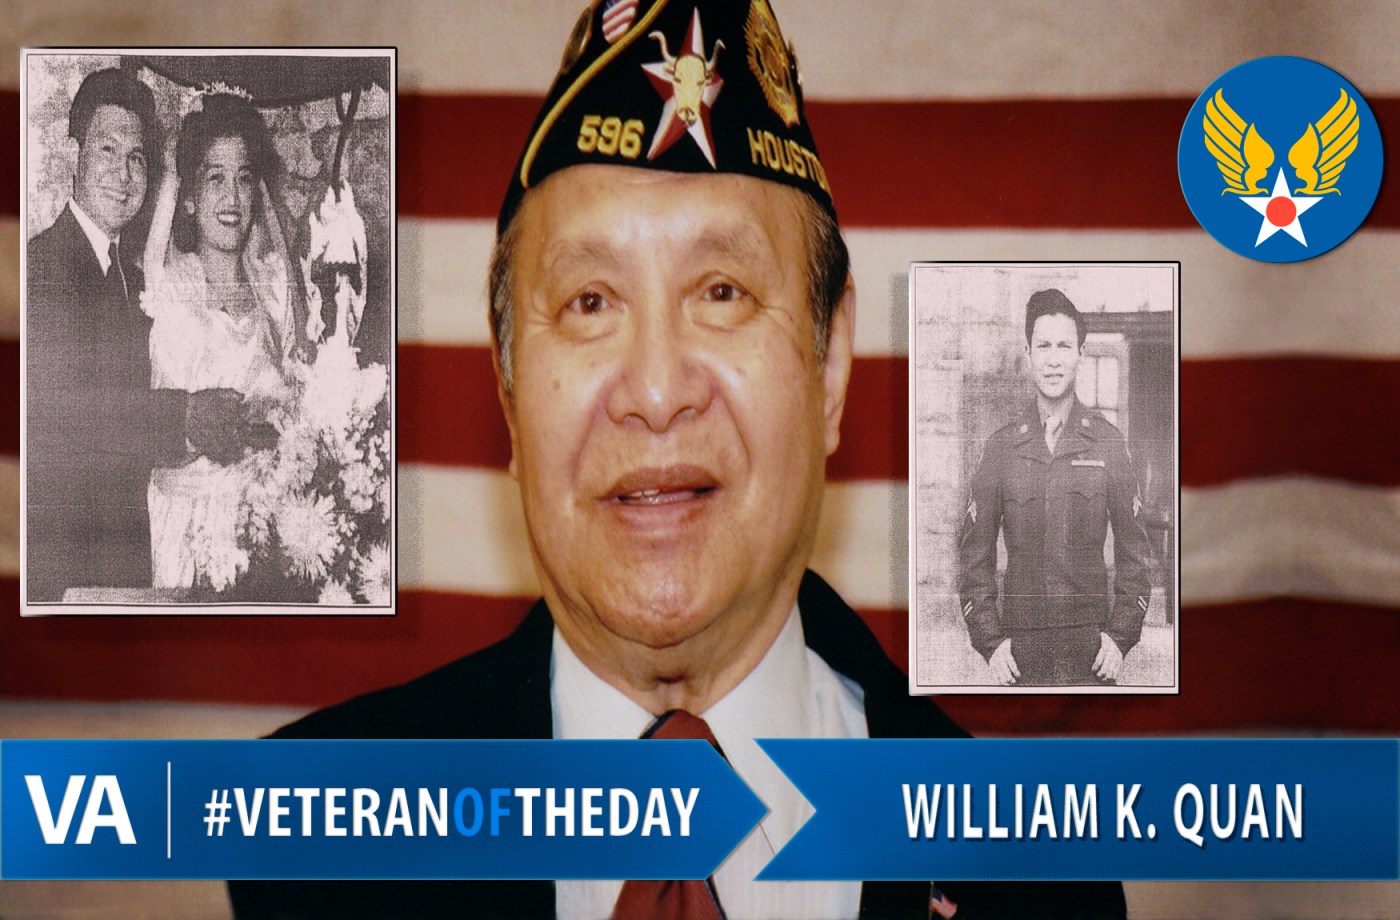 Veteran of the Day William K. Quan